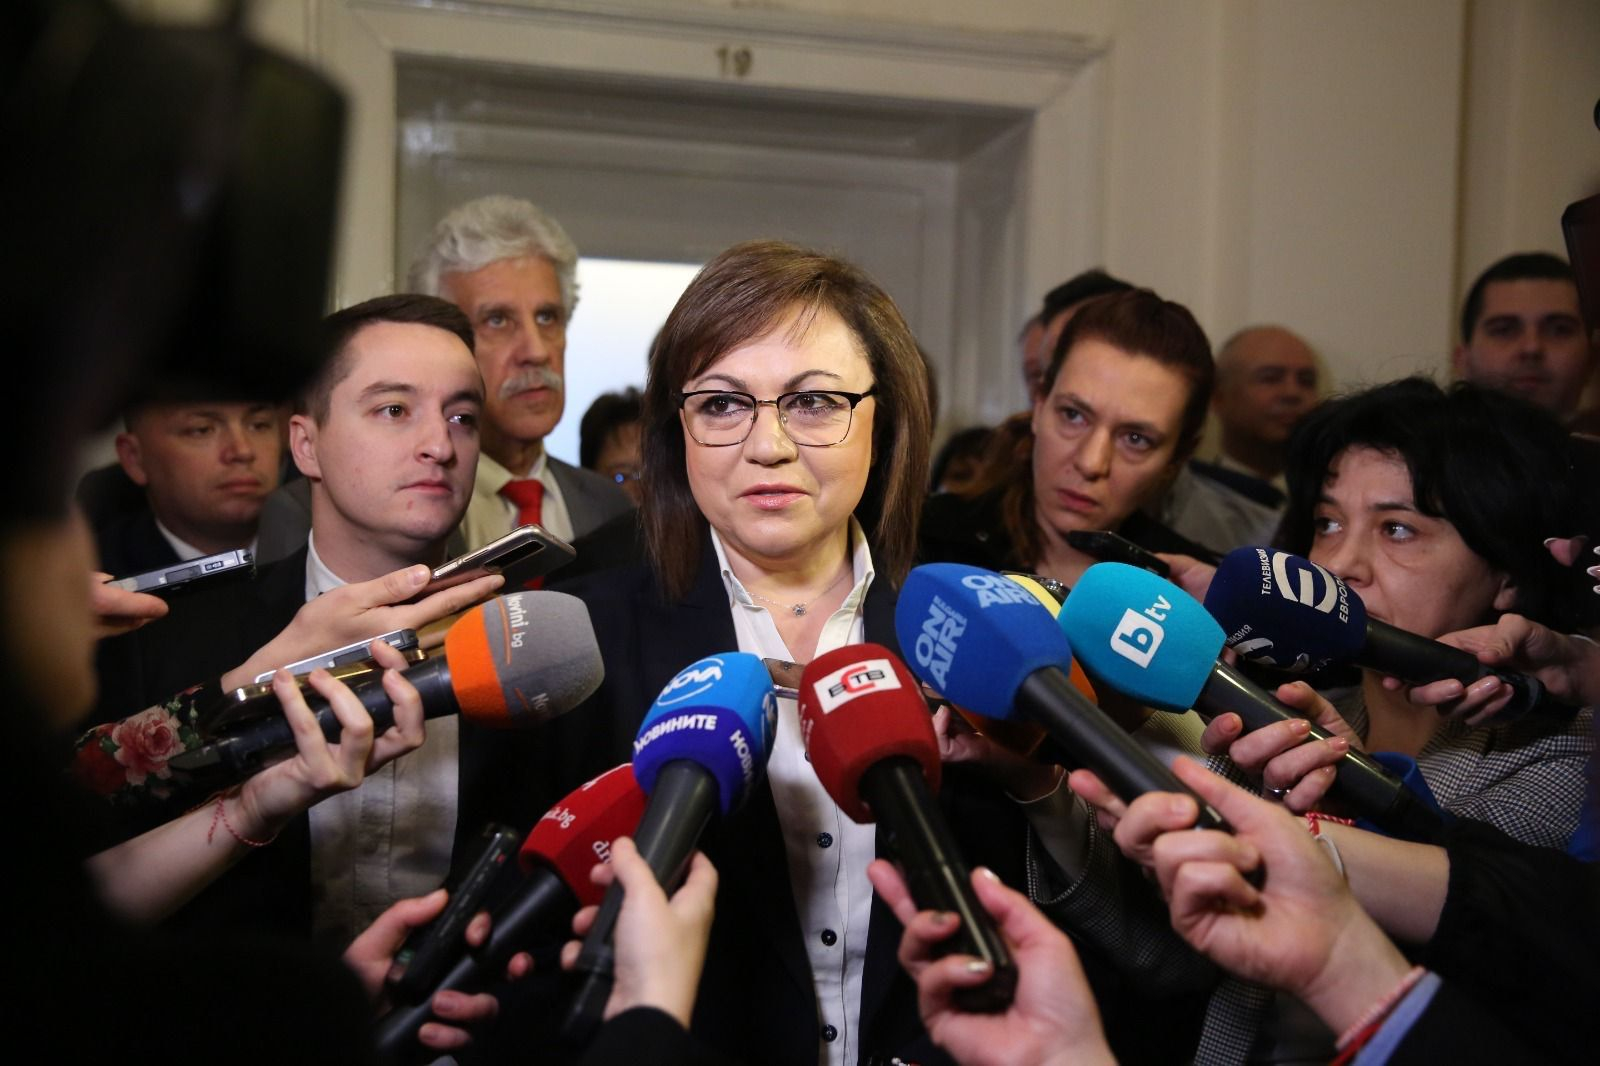 Корнелия Нинова: Последователна позиция на БСП е, че управлението на Борисов беше задкулисие и корупция